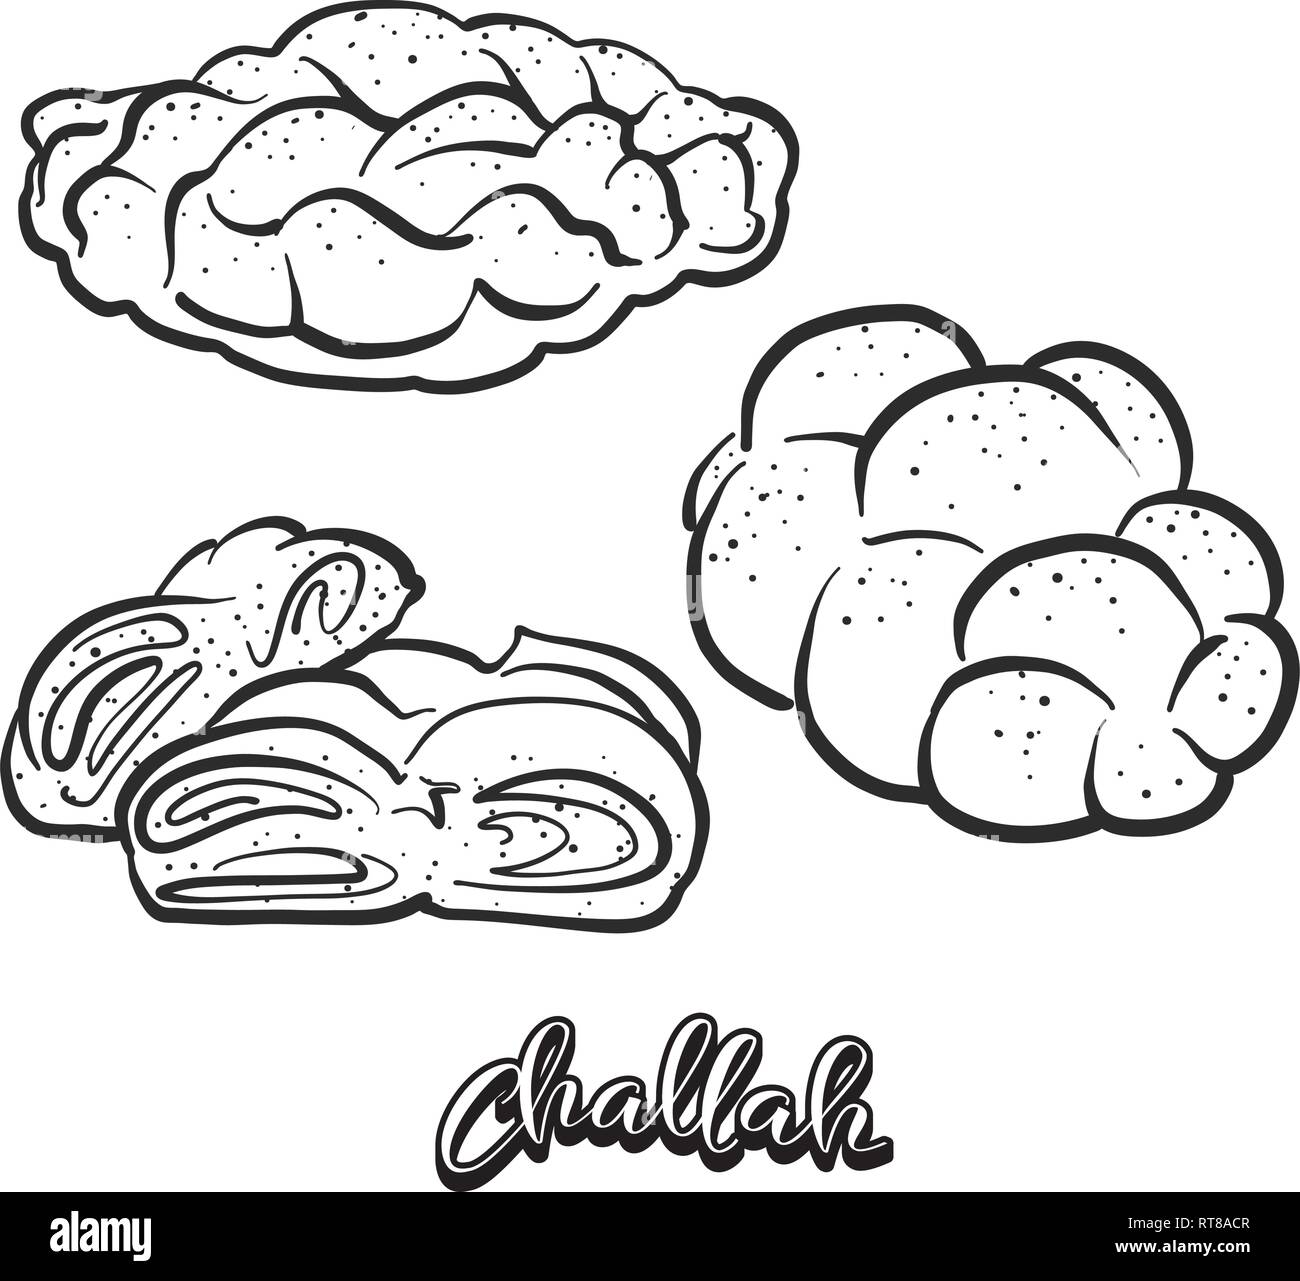 Hand gezeichnete Skizze der Challah Brot. Vektor Zeichnung der gesäuertes Essen, in der Regel in Polen und Israel bekannt. Brot Abbildung Serie. Stock Vektor